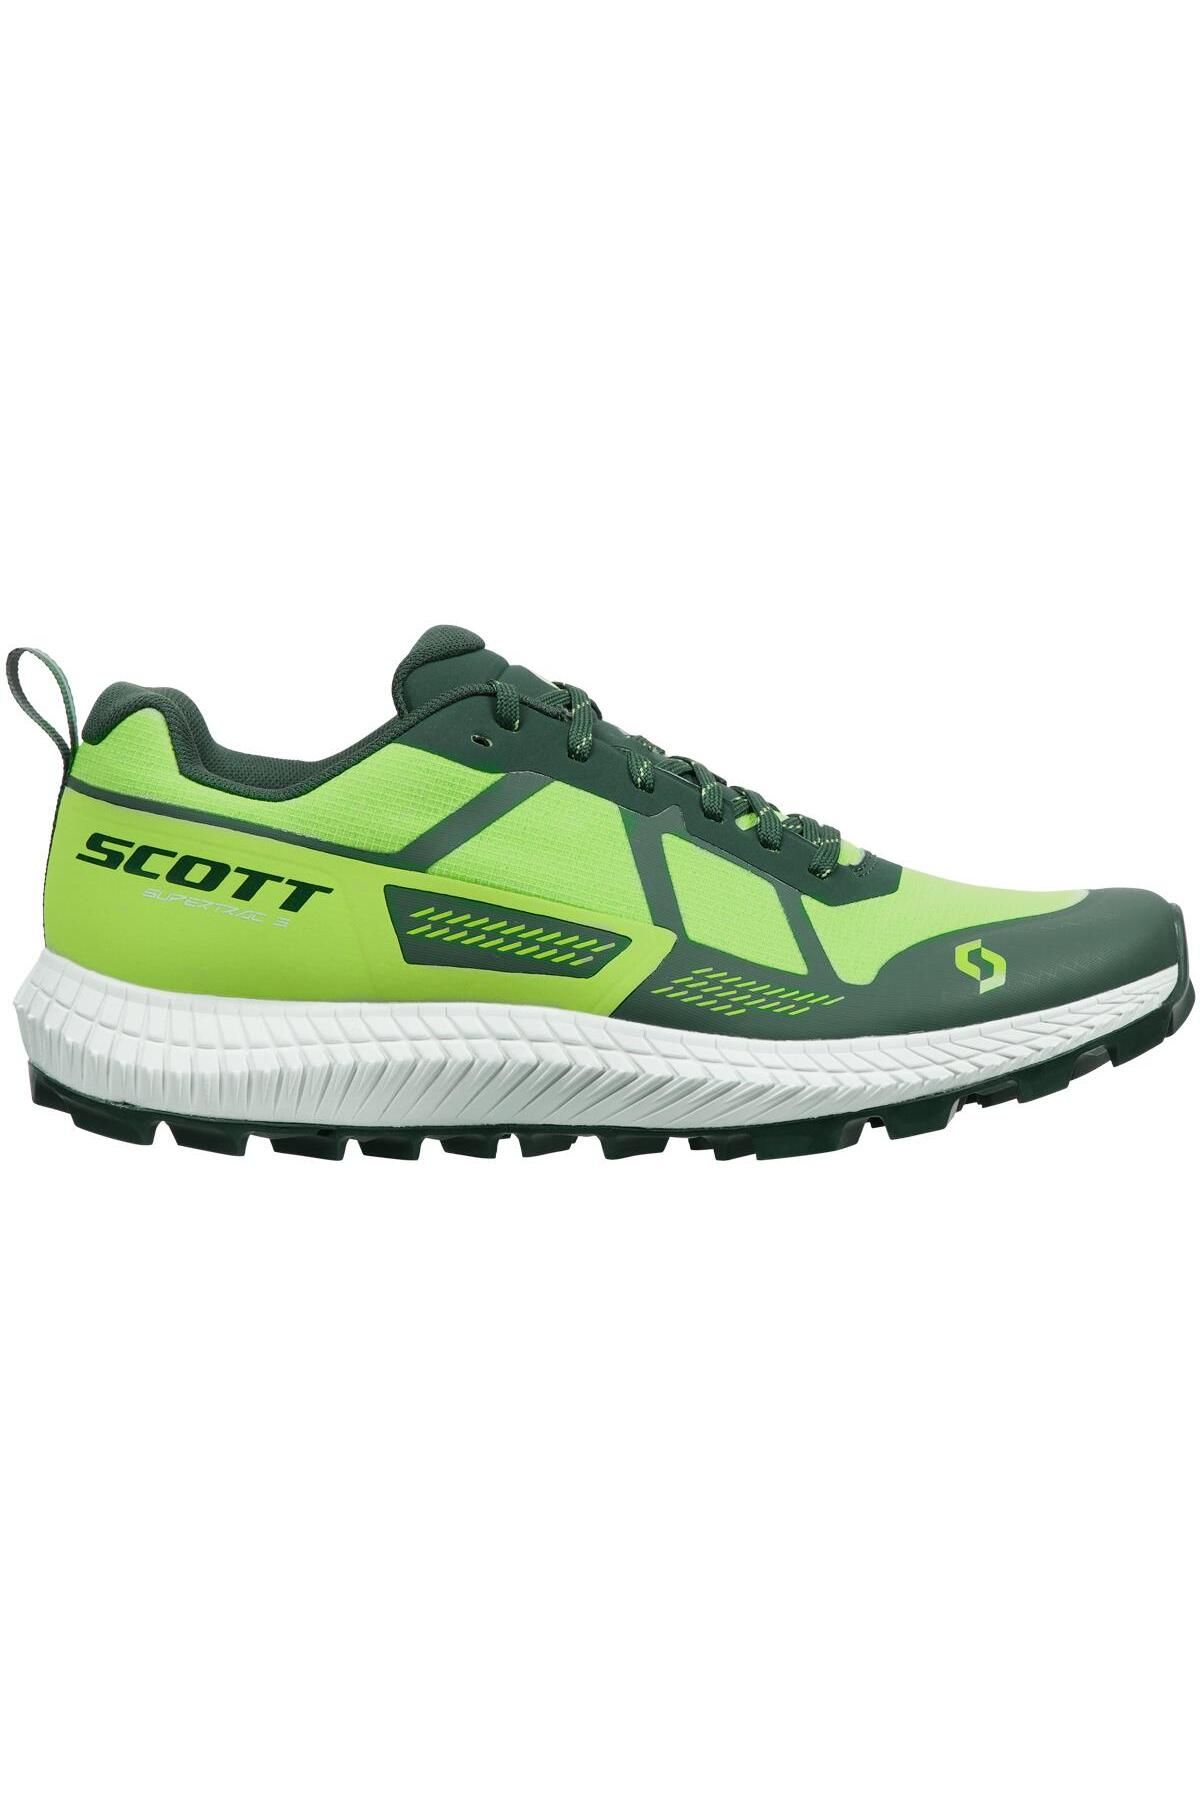 SCOTT Supertrac 3 Erkek Patika Koşu Ayakkabısı-YEŞİL